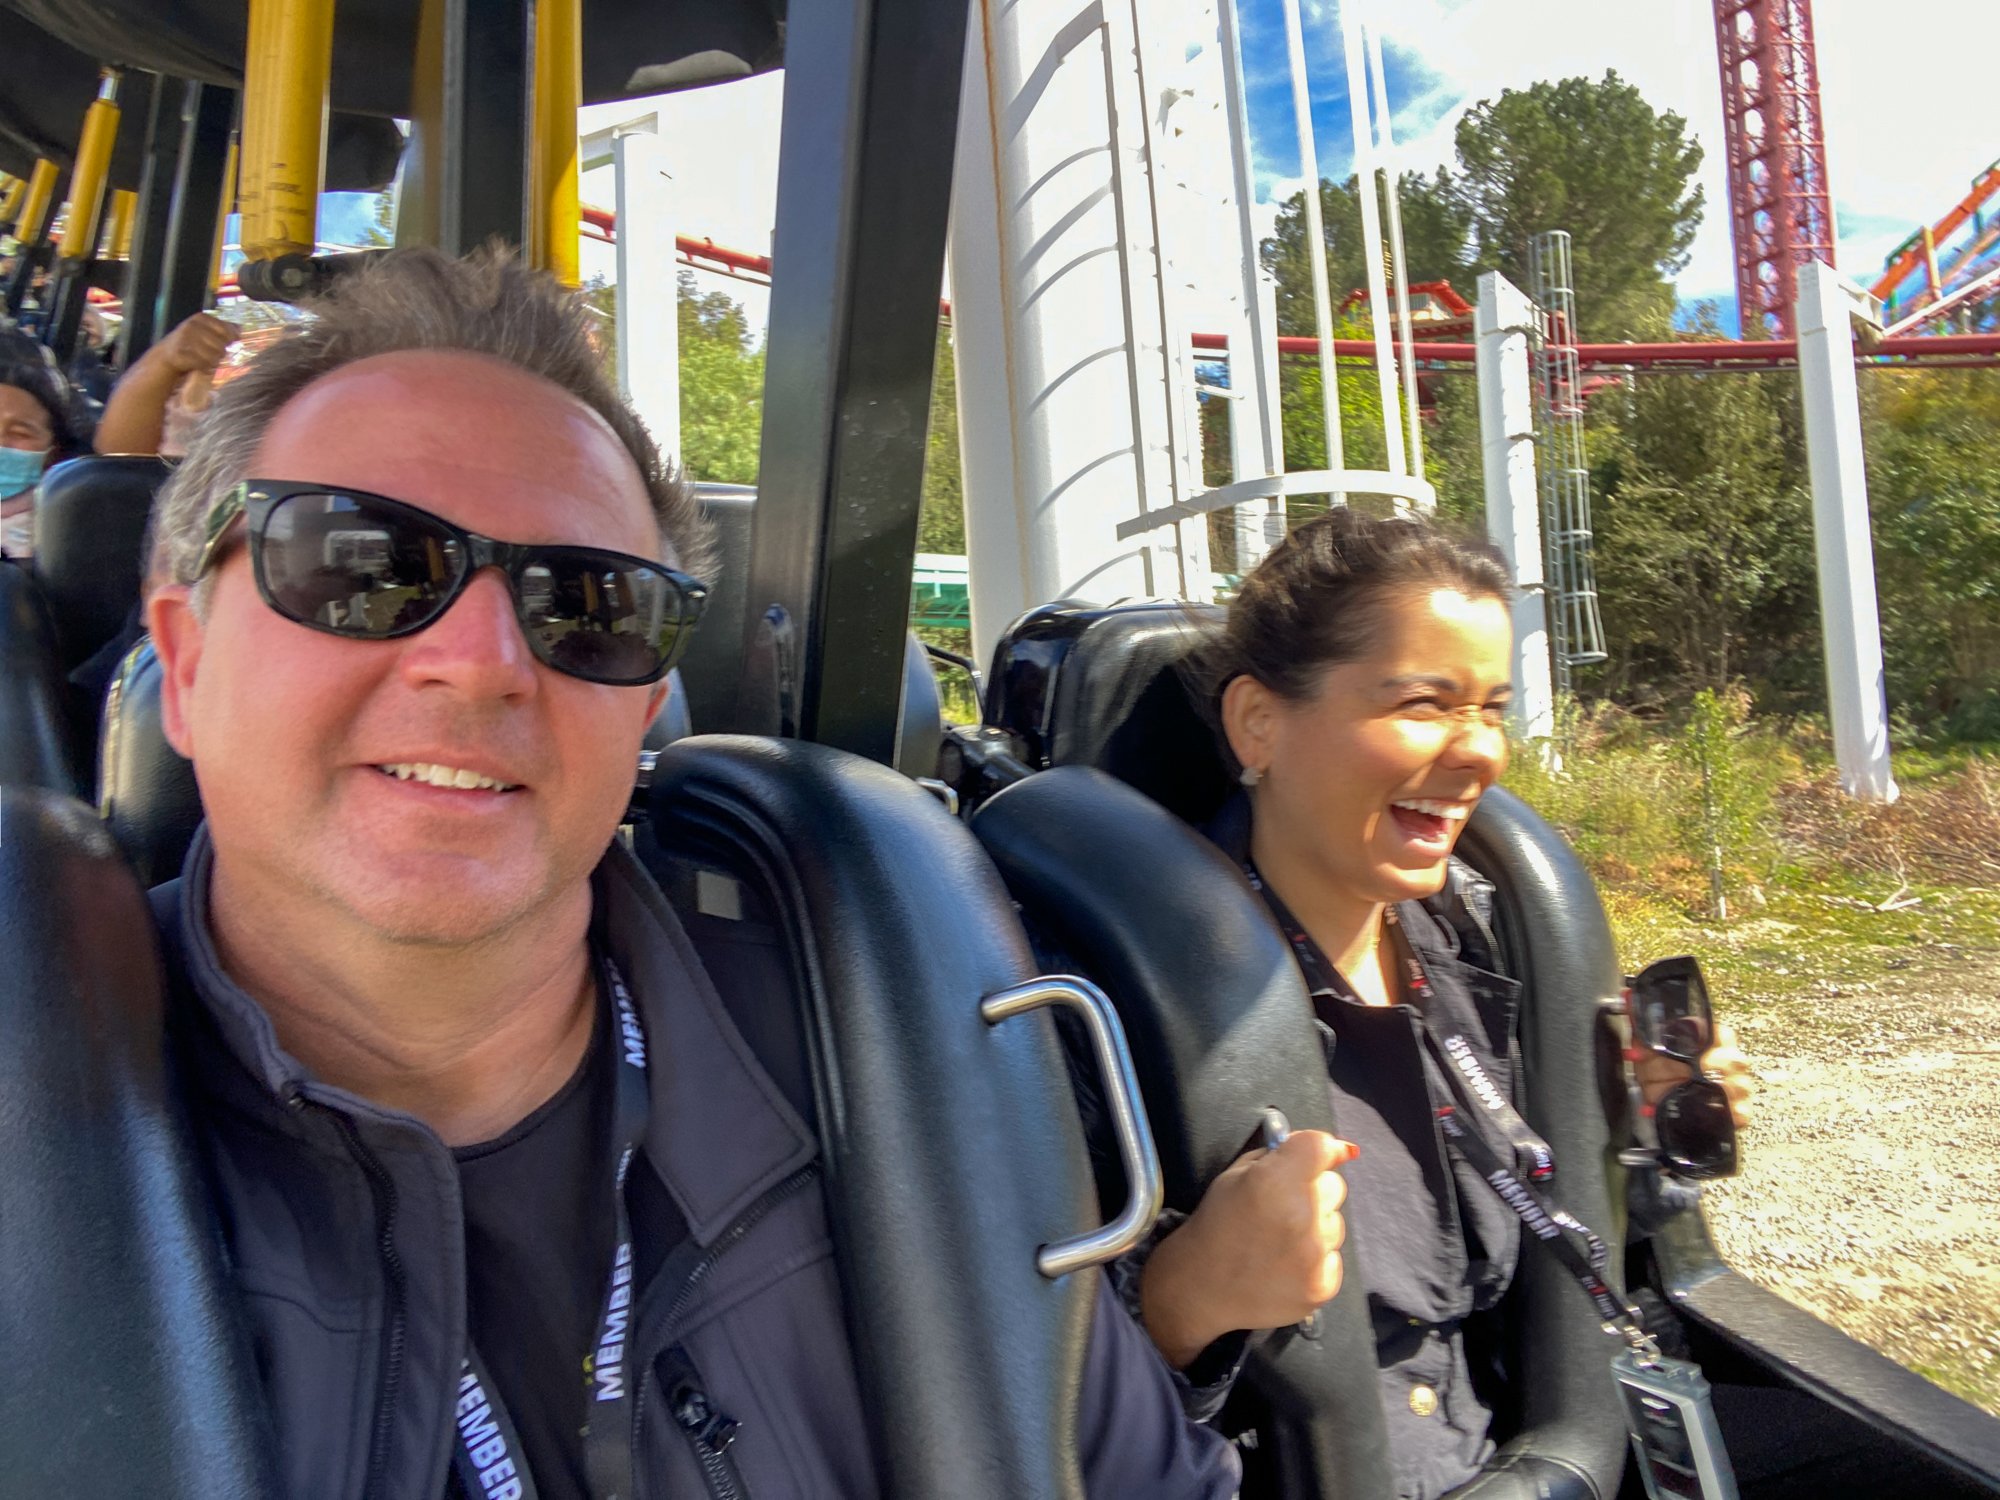 Riding Ninja Roller Coaster Six Flags Magic Mountain